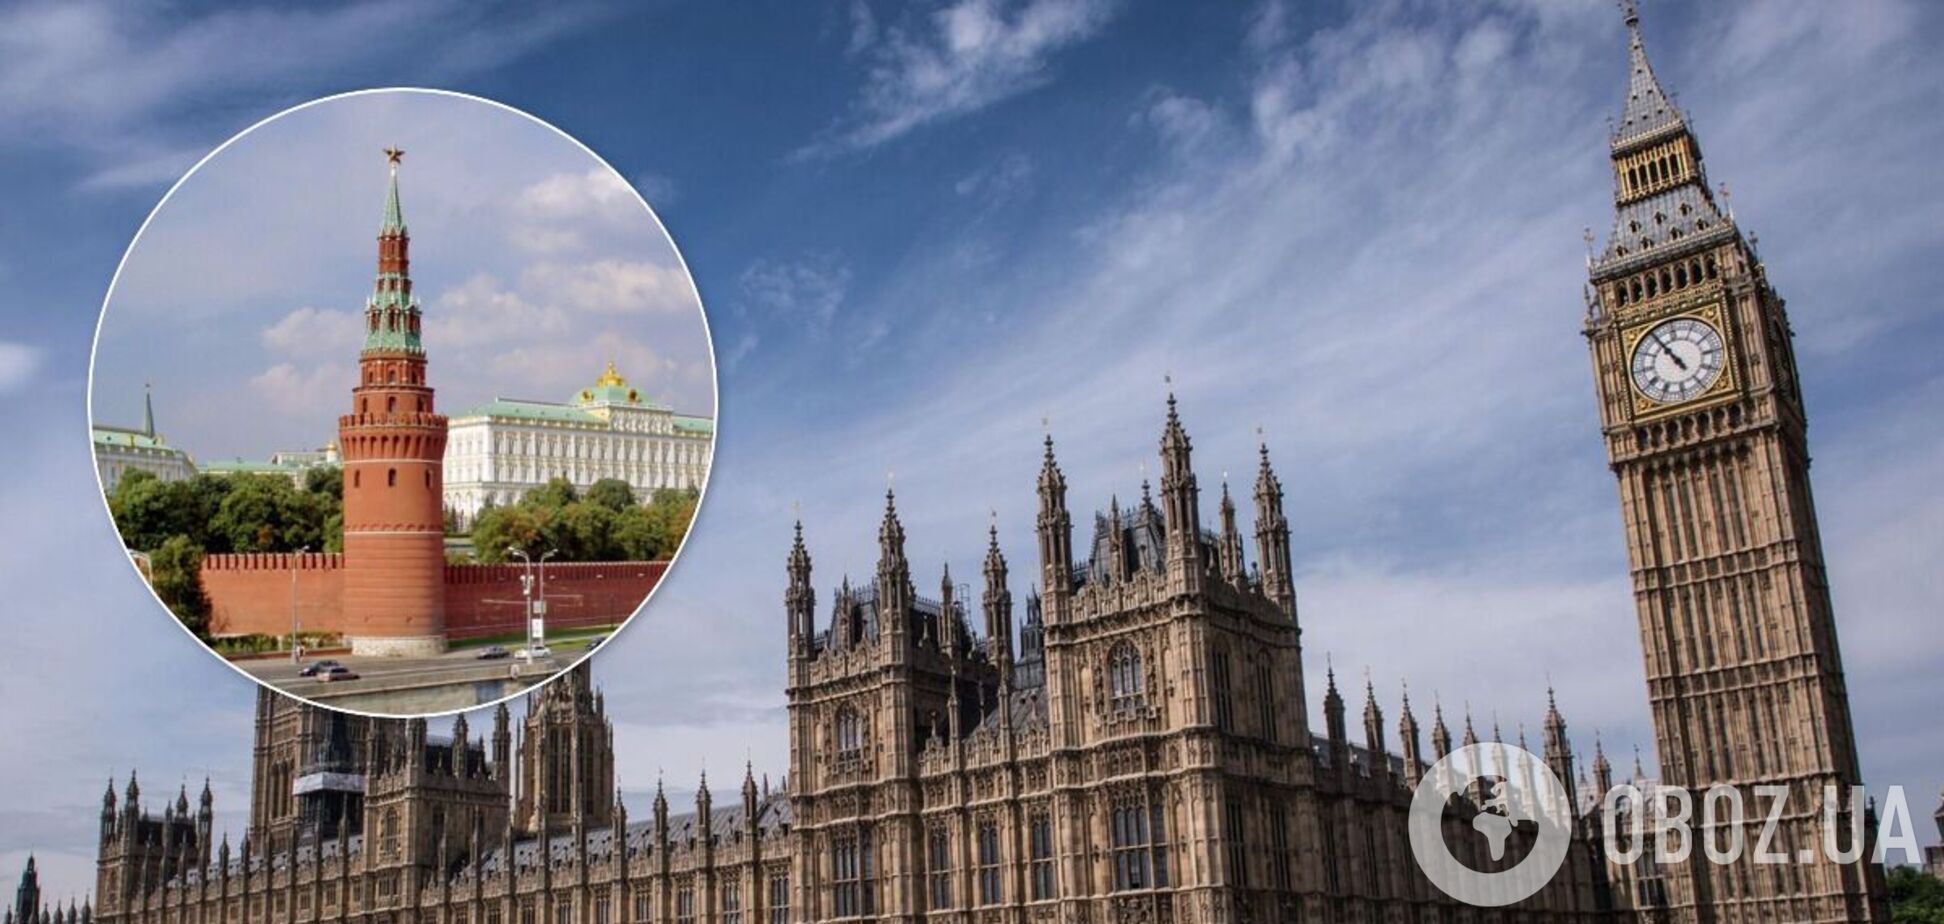 'Слив' от финансовой разведки США обнаружил финансирование британского парламента из России